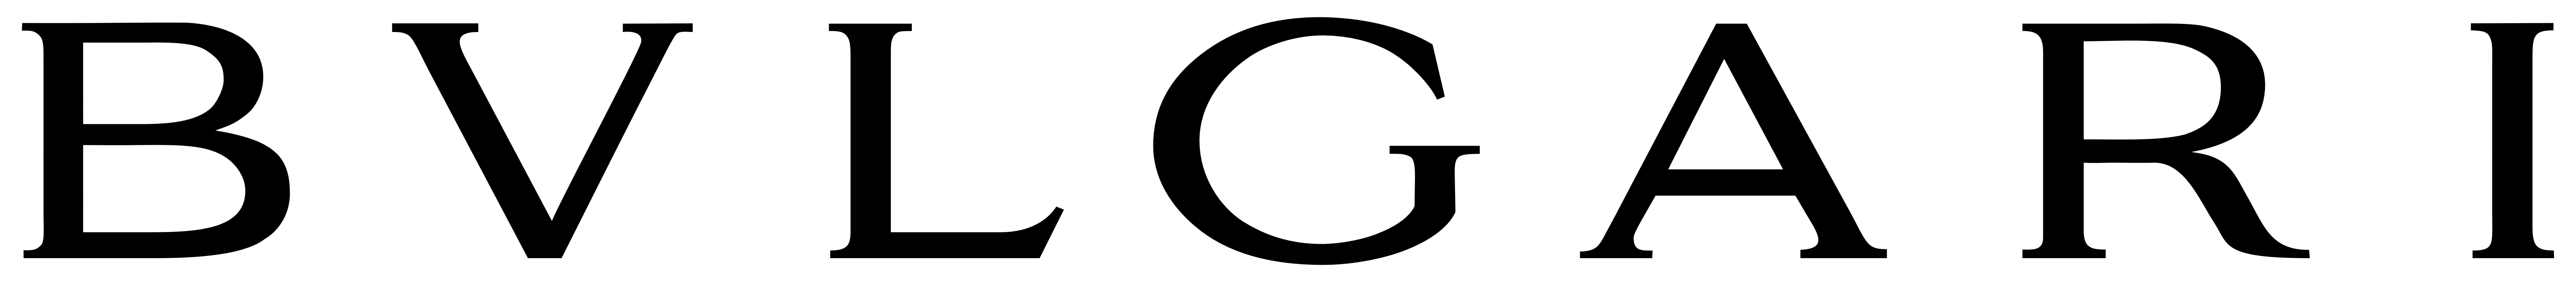 Bvlgari Logo PNG - 176070